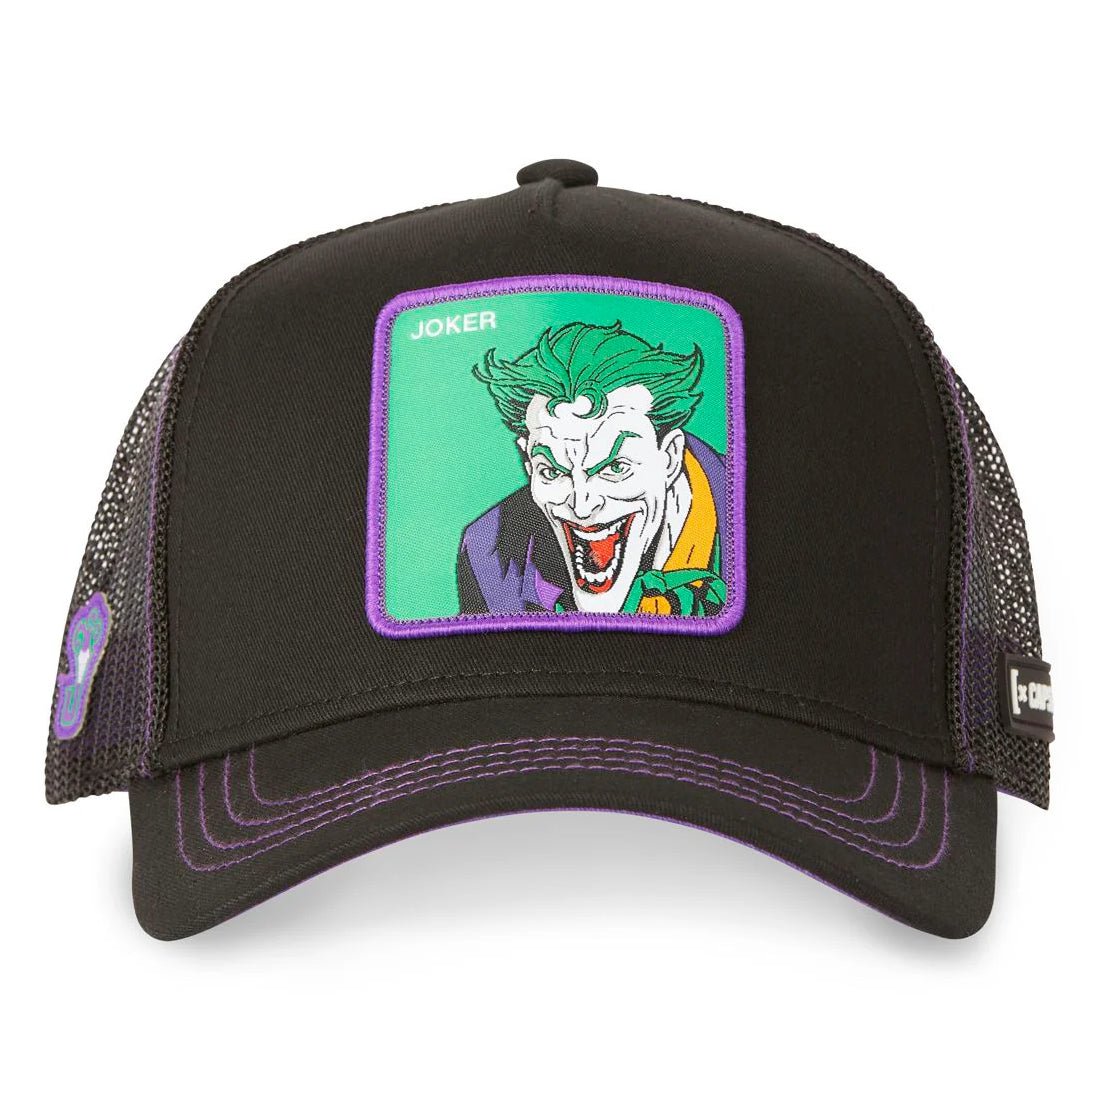 Queue Caps The Joker Cap - Black - قبعة - Store 974 | ستور ٩٧٤